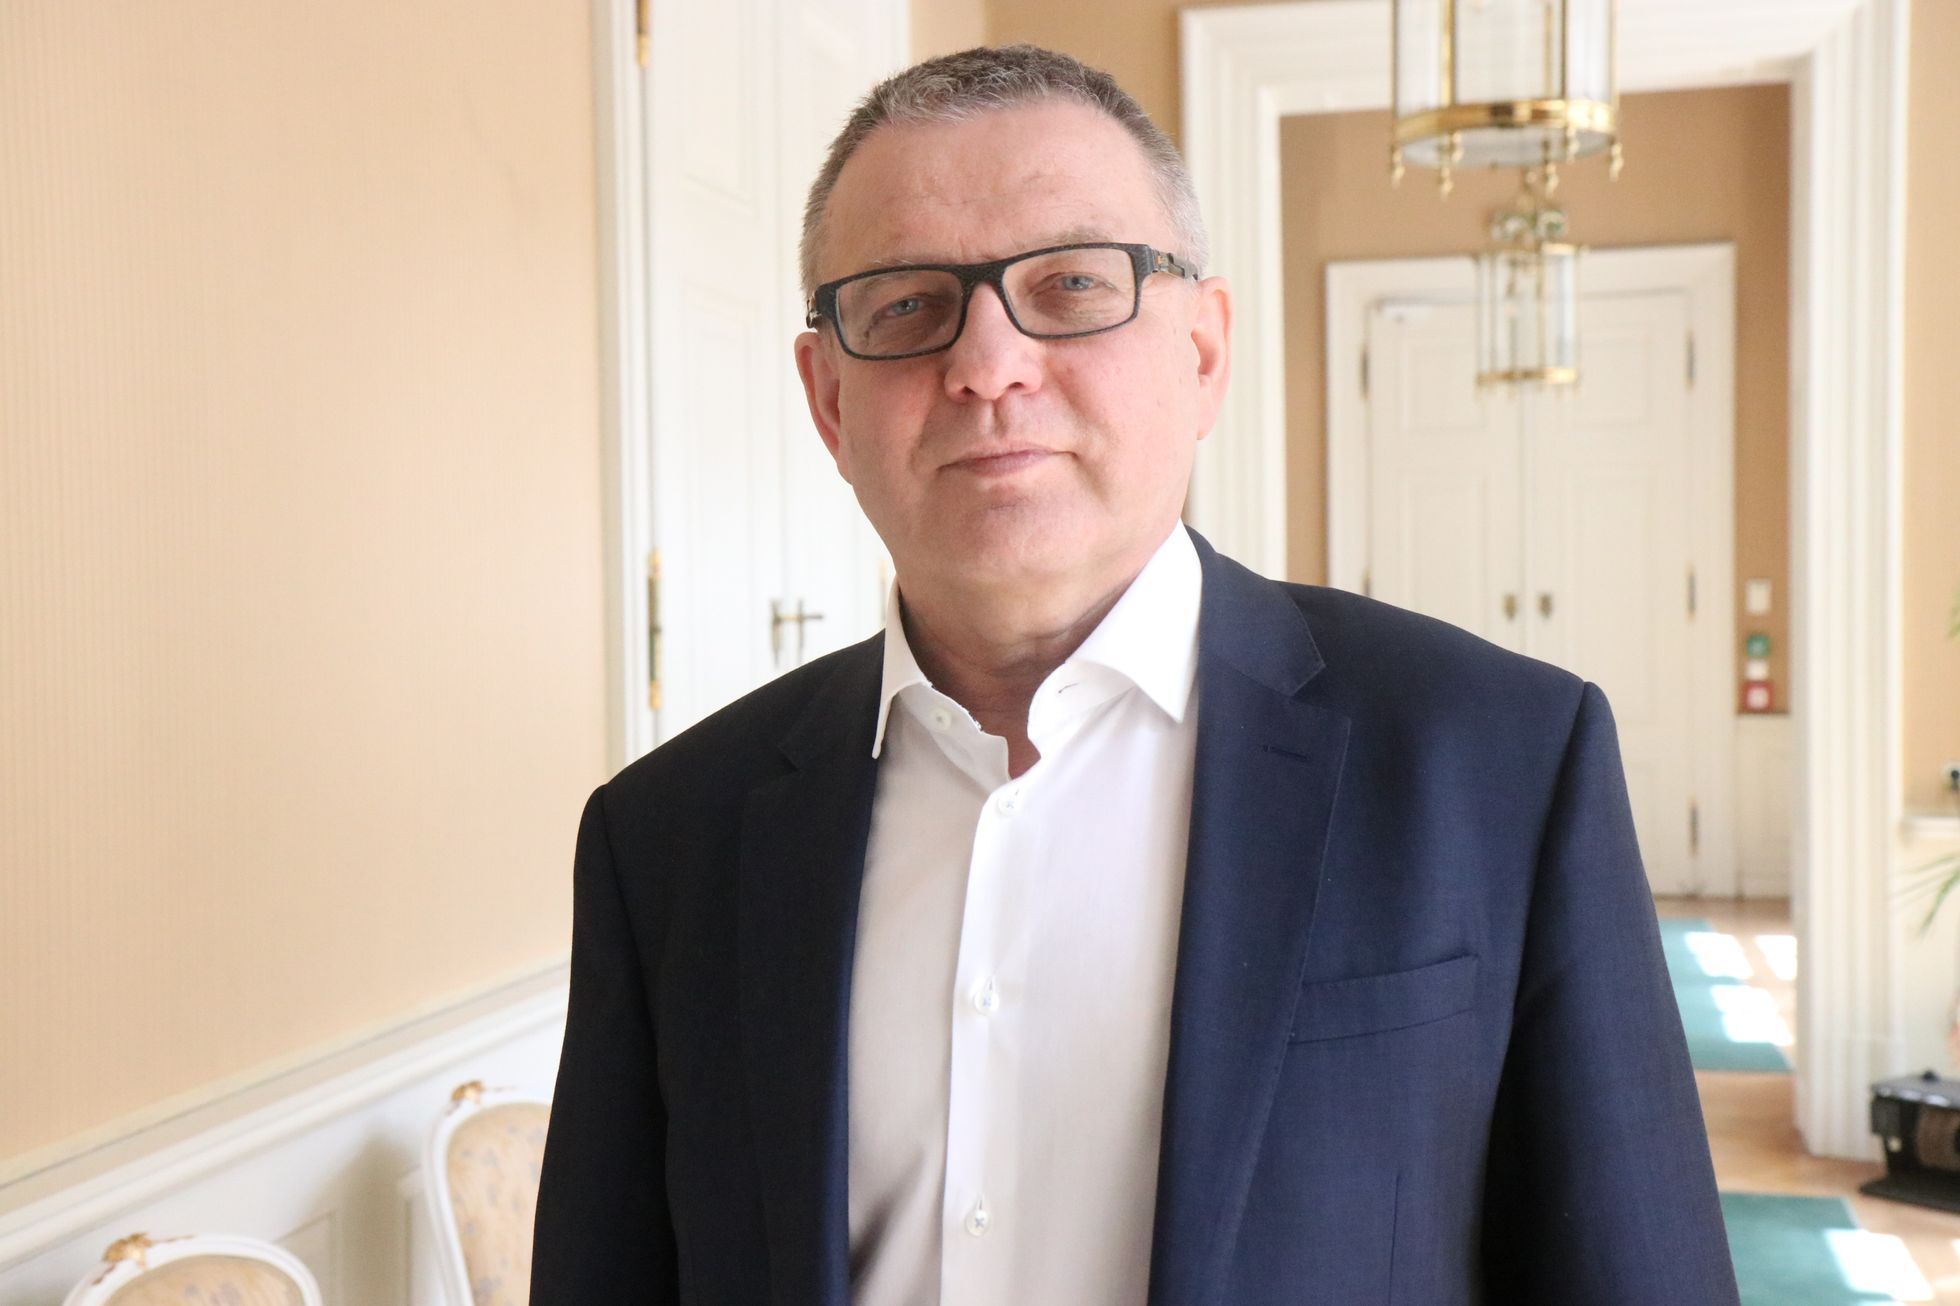 Ministr kultury Lubomír Zaorálek (ČSSD) v polovině května 2021 na chodbě svého úřadu